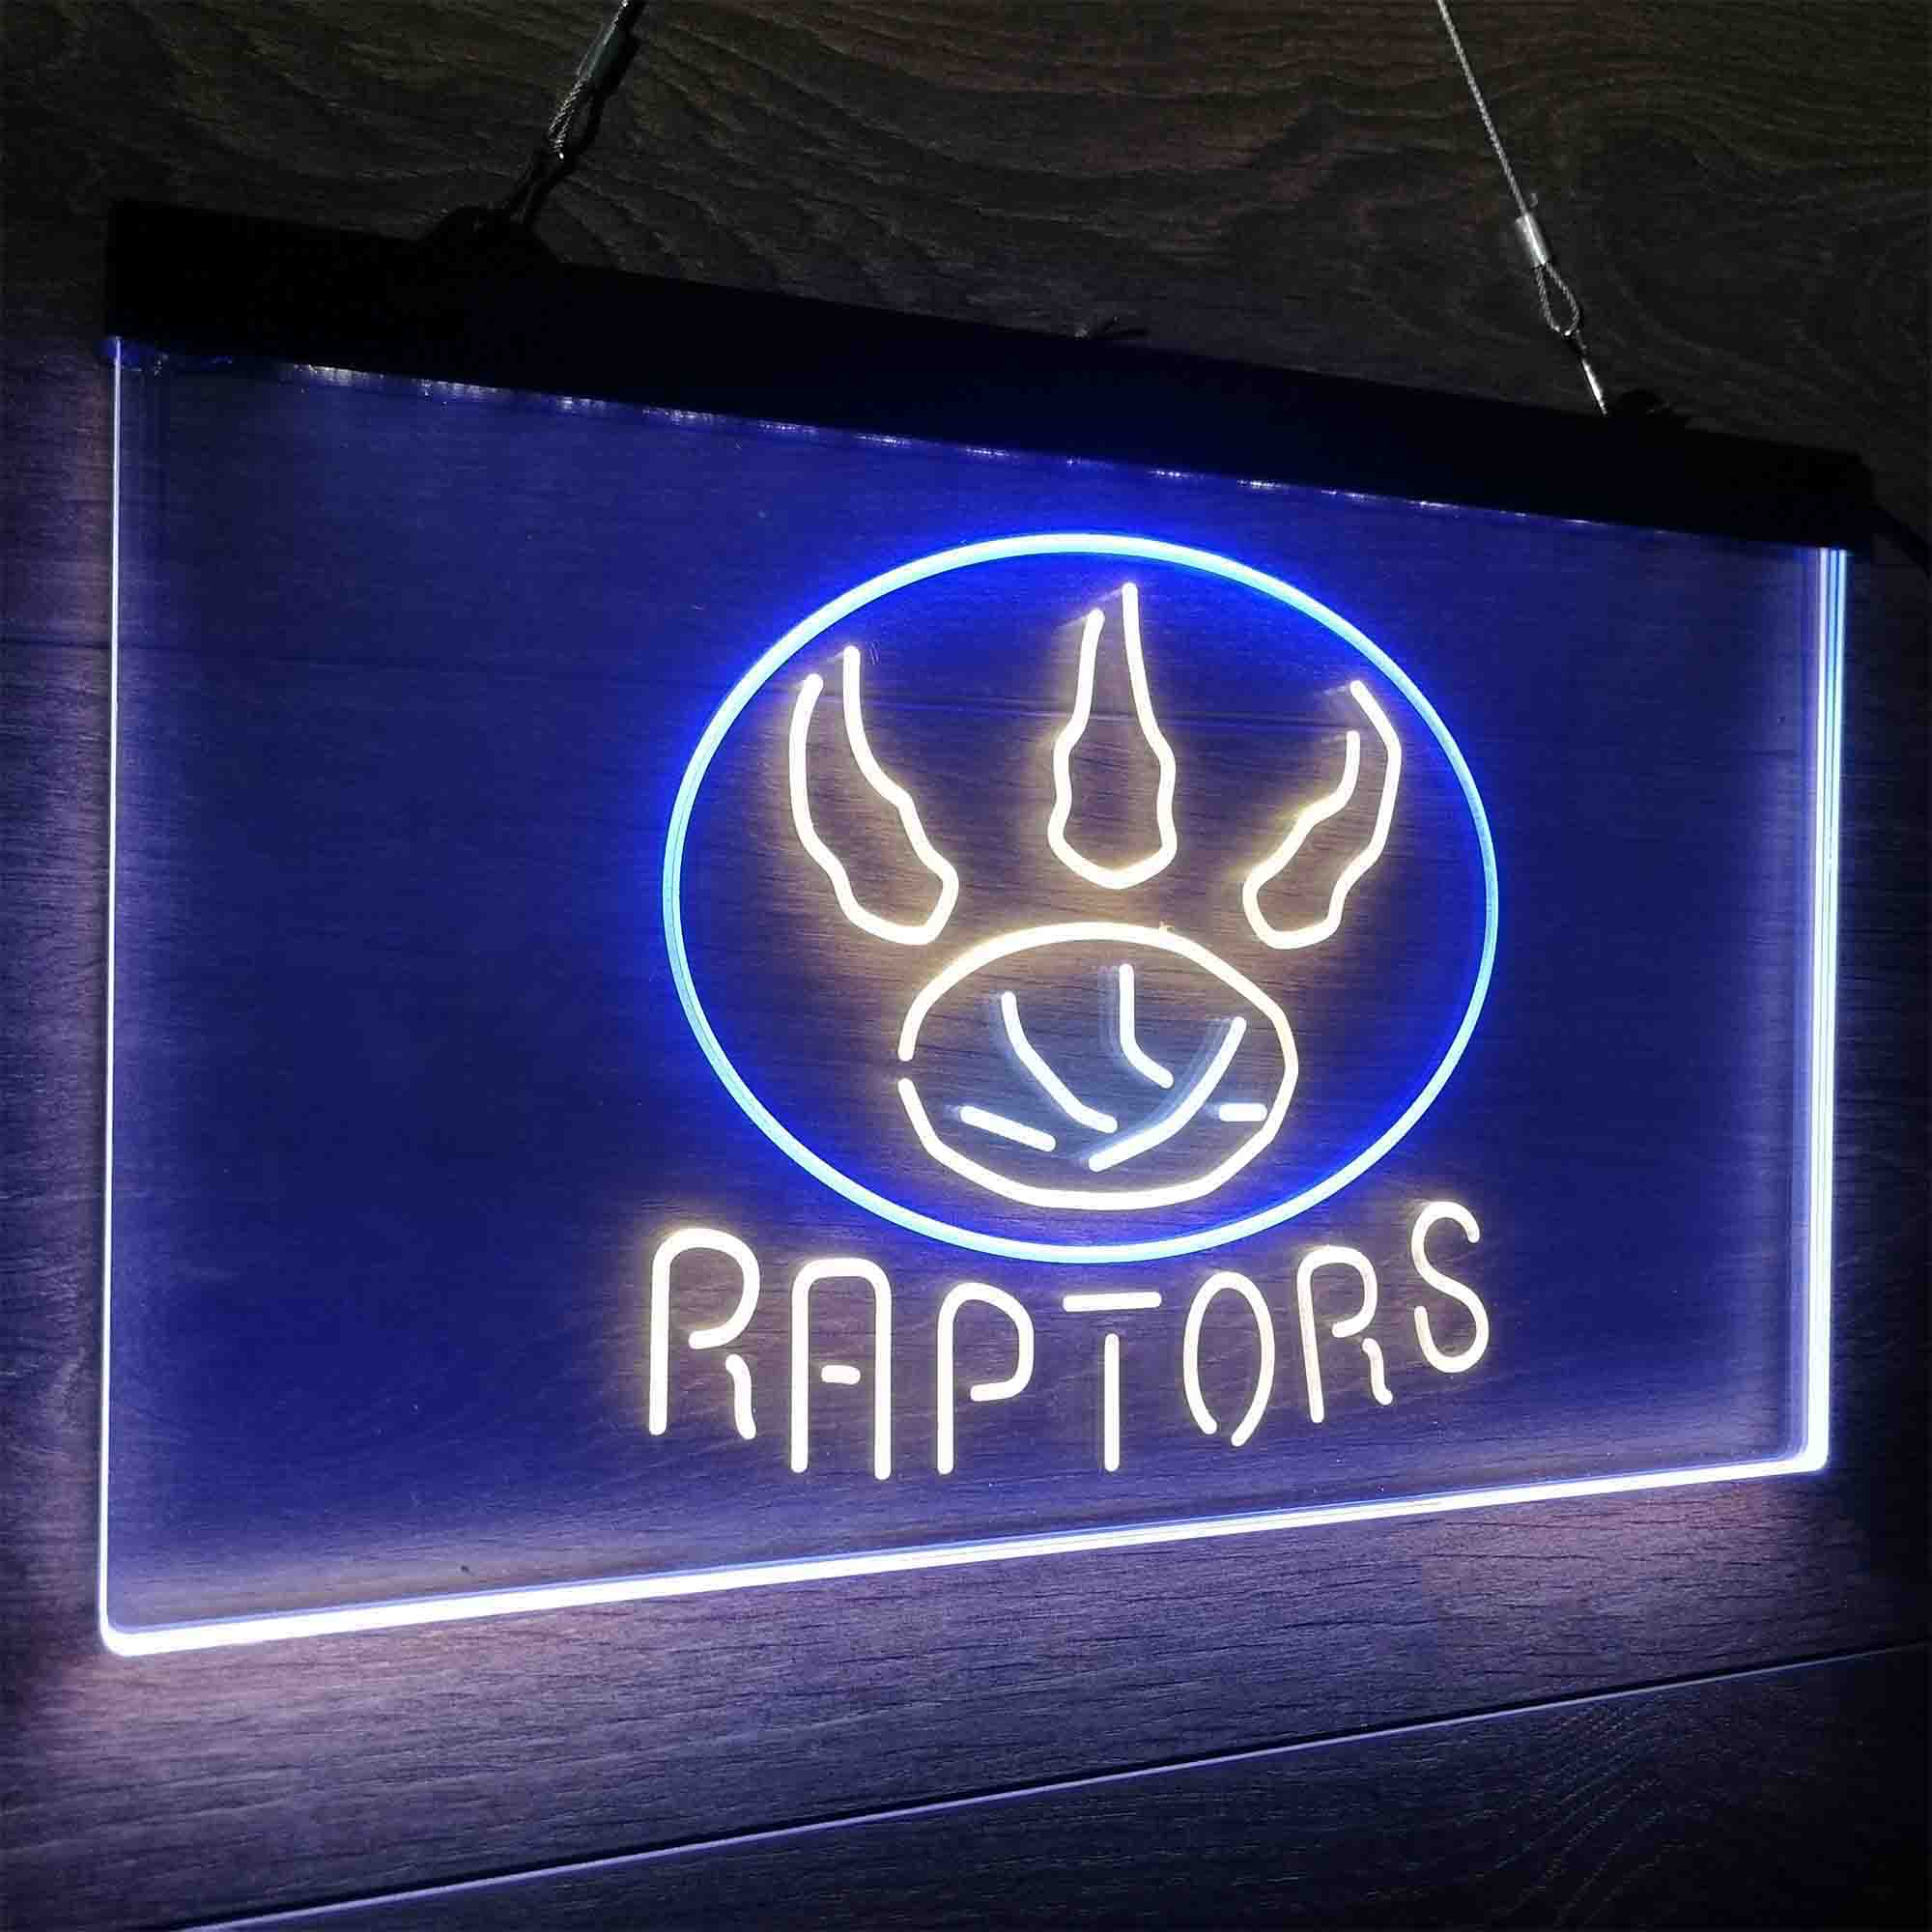 Toronto Sport Club League Team Raptors Souvenir Neon LED Sign 3 Colors